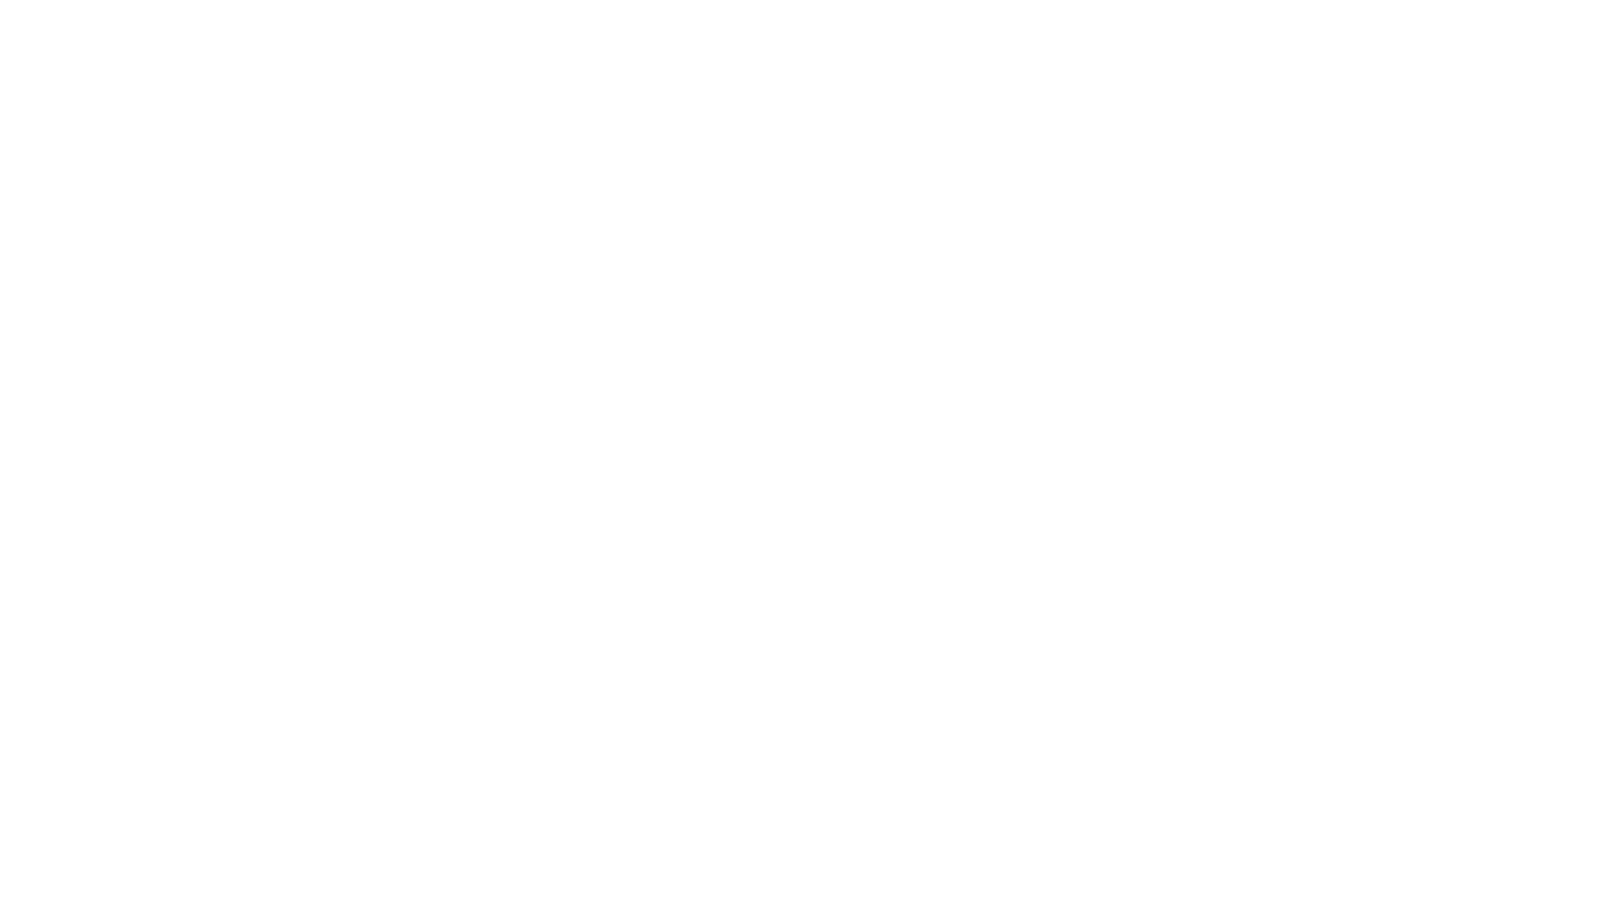 О.Д. Федорова аатынан киин модельнай библиотека 2022 сылга ыытыллар Олоҥхо ыһыаҕар бэлэмнэнии чэрчитинэн саҥа бырайыак, Н.С. Александров - Ынта Никиитэ "Көр Буурай" олоҥхотунан олоҥхо уһун тыыннаах ааҕыытын түһүлгэтин тэрийдэ. Олоҥхону улууспут тэрилтэлэриттэн 36 киһи тохтобула суох долгуйа аахтылар, сөхтүлэр-махтайдылар.